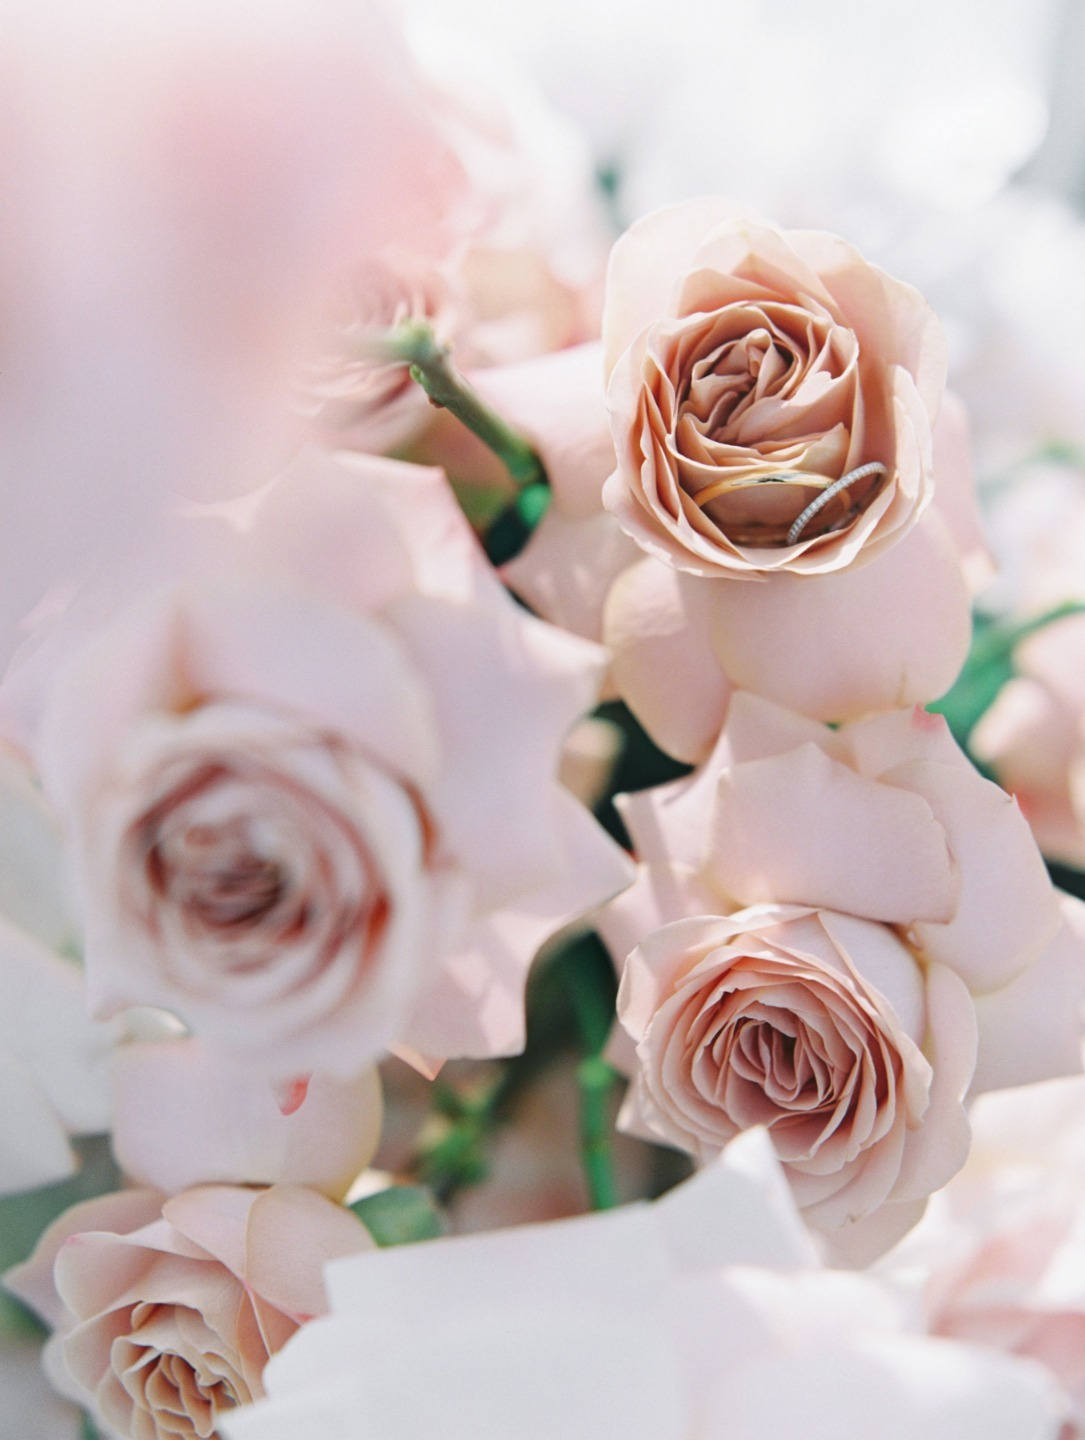 ФОТО ИЗ СТАТЬИ: Классическая свадьба в розовых оттенках на берегу реки